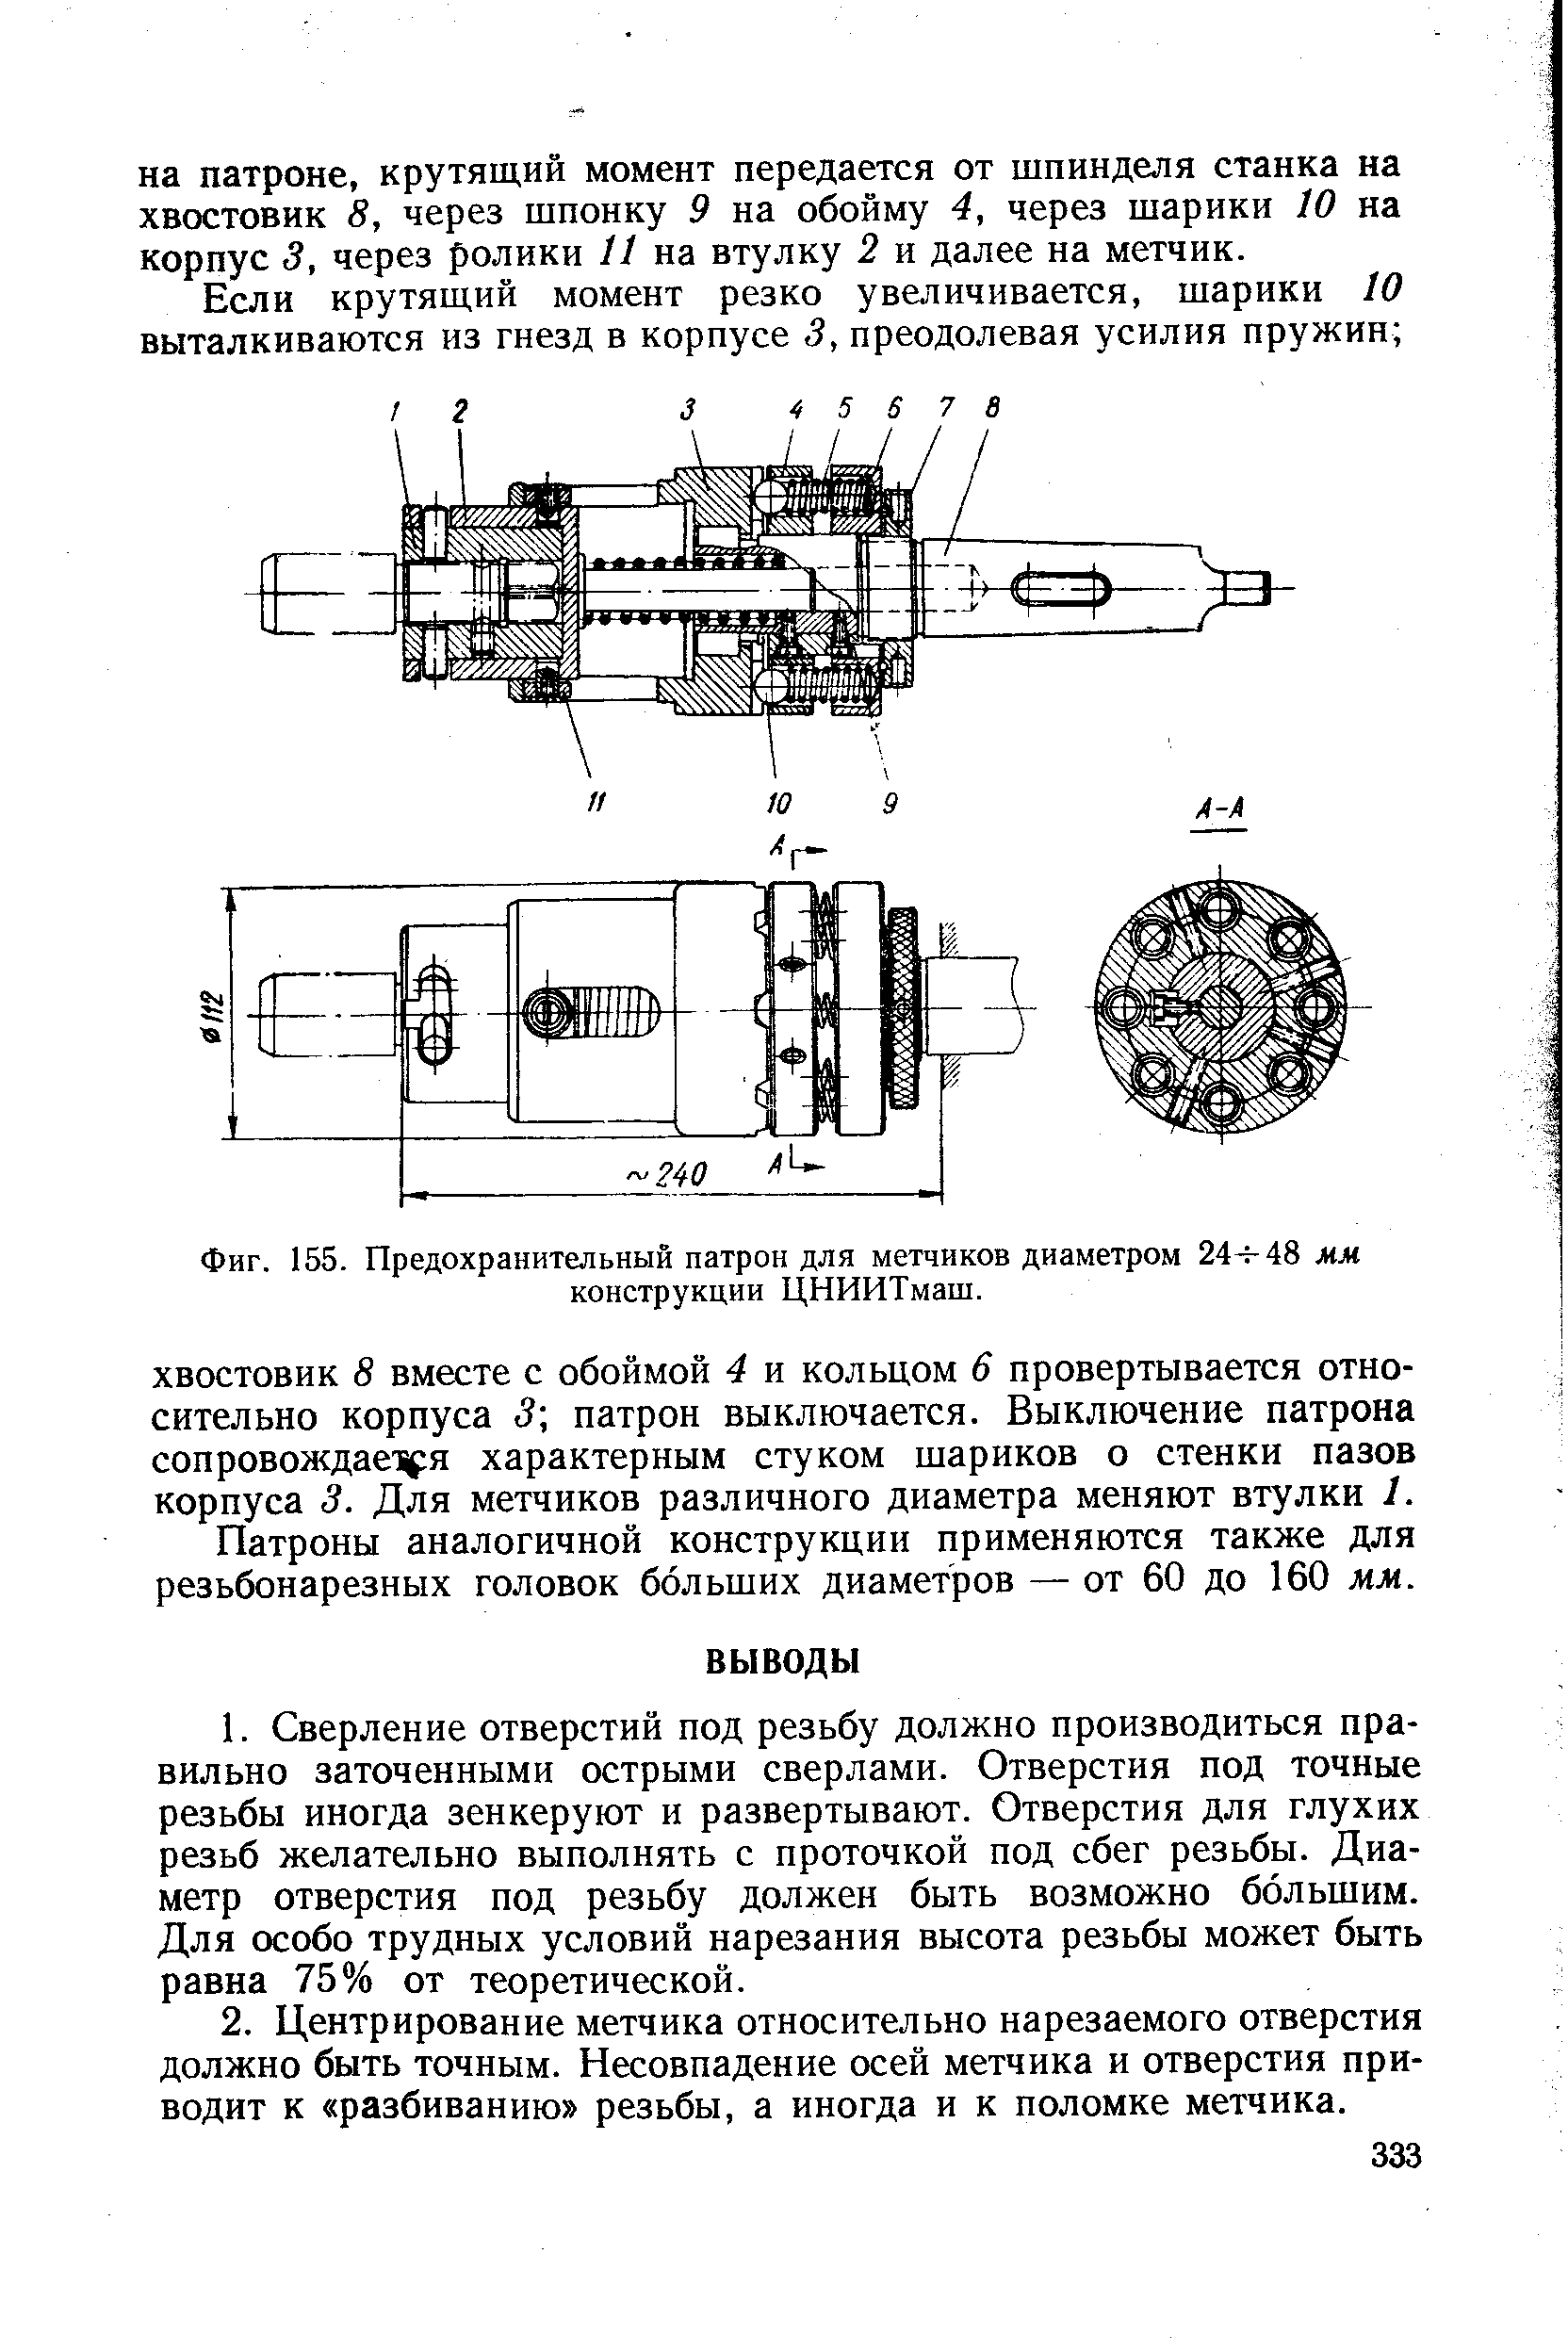 Фиг. 155. Предохранительный патрон для метчиков диаметром 2А-ьАЪ мм конструкции ЦНИИТмаш.
